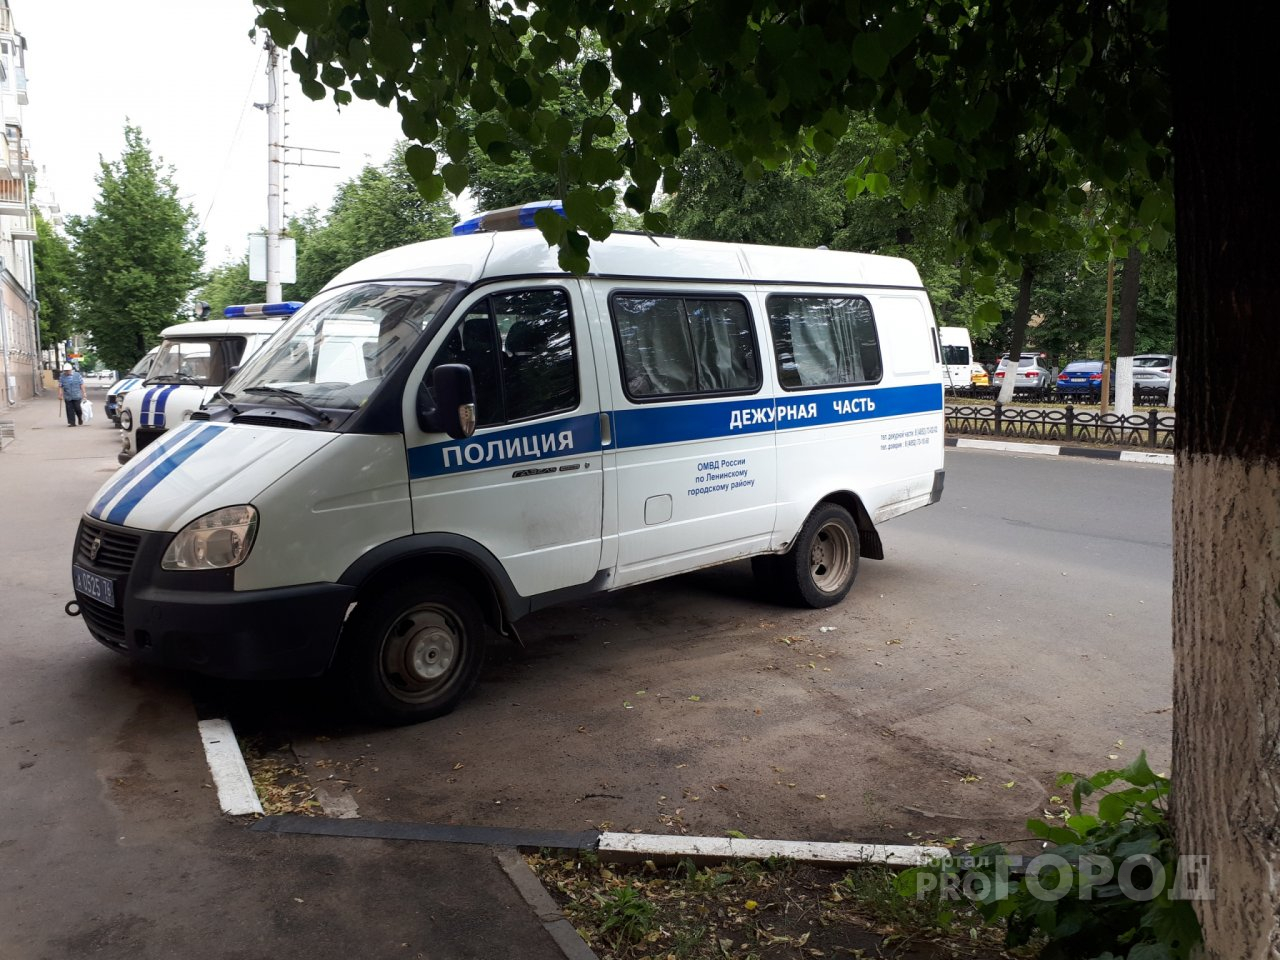 Скандал с задержанием выпускника в Ярославле: что ответили в полиции